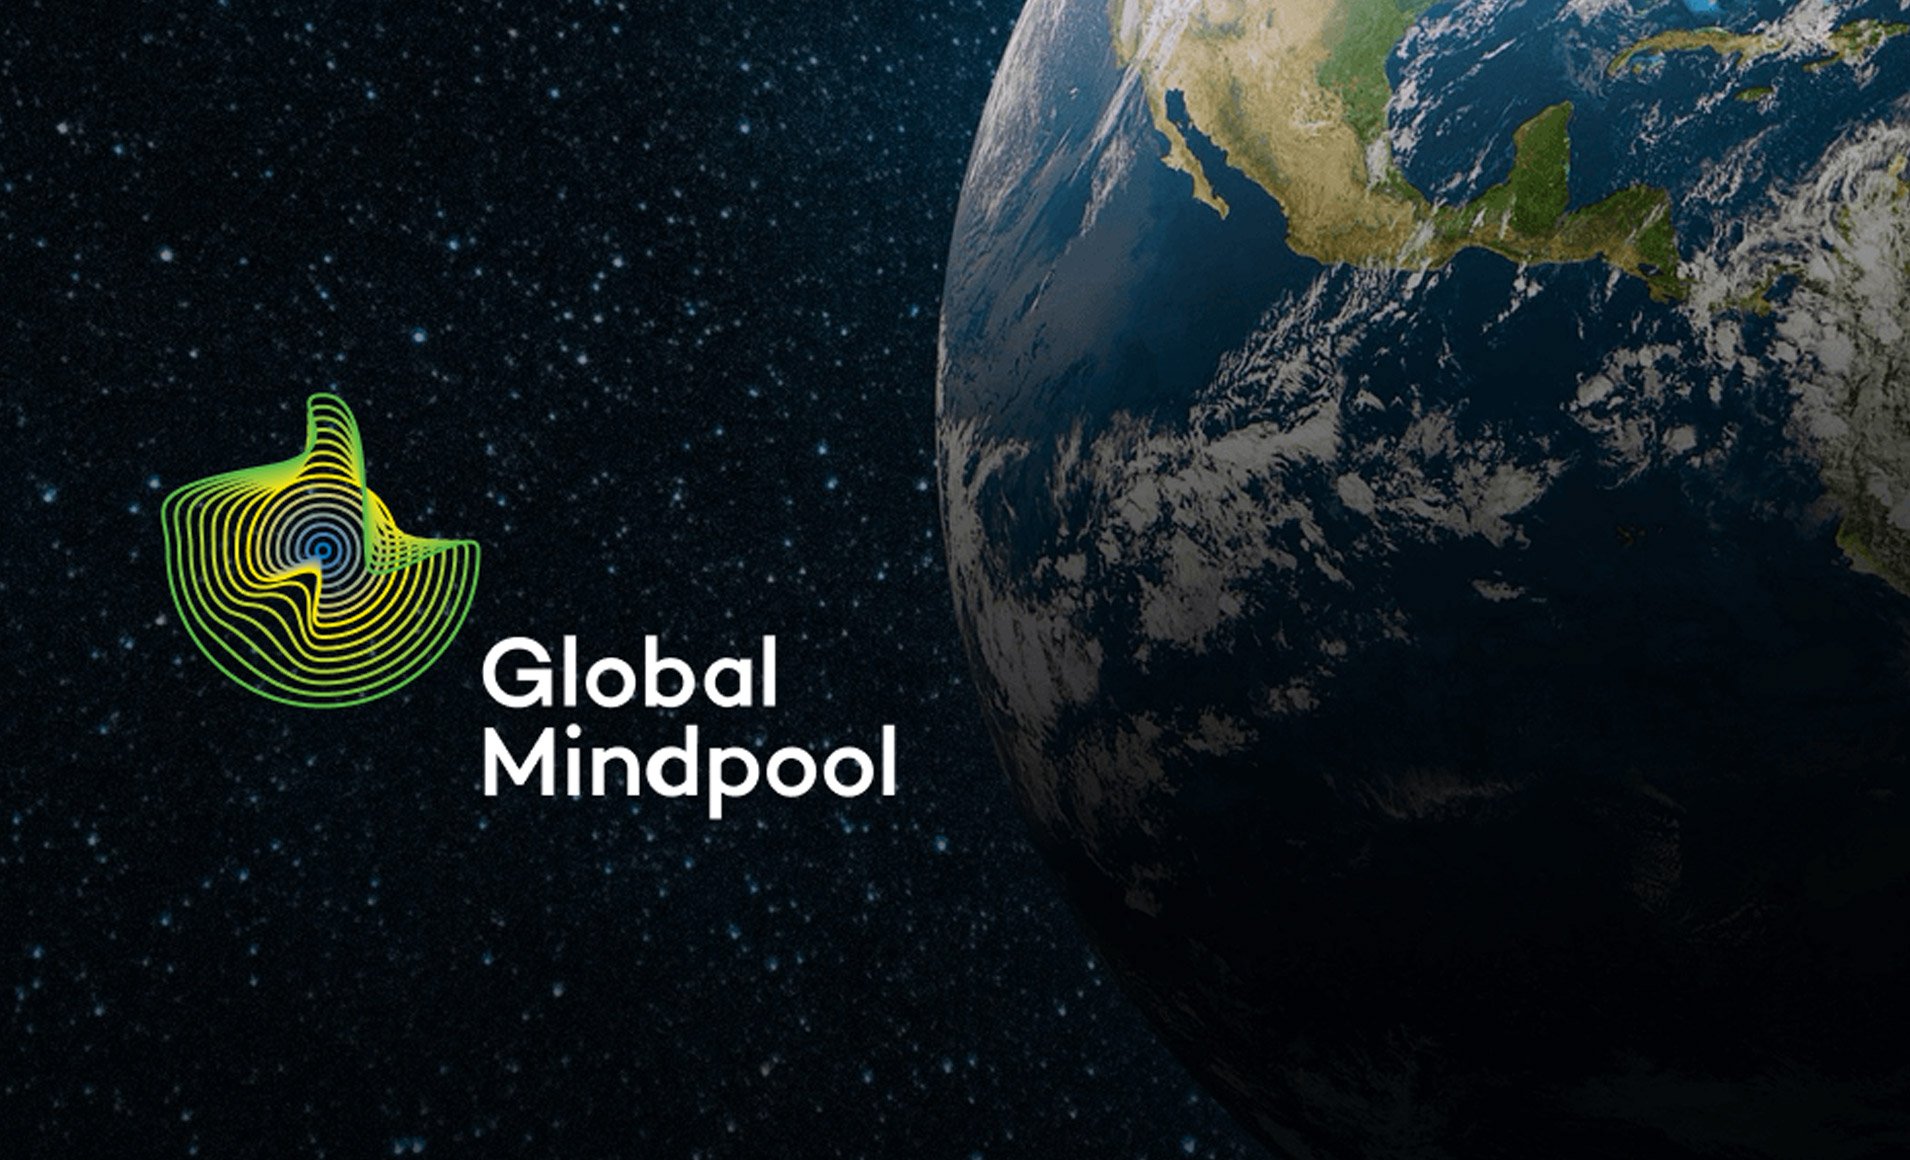 Global Mindpool